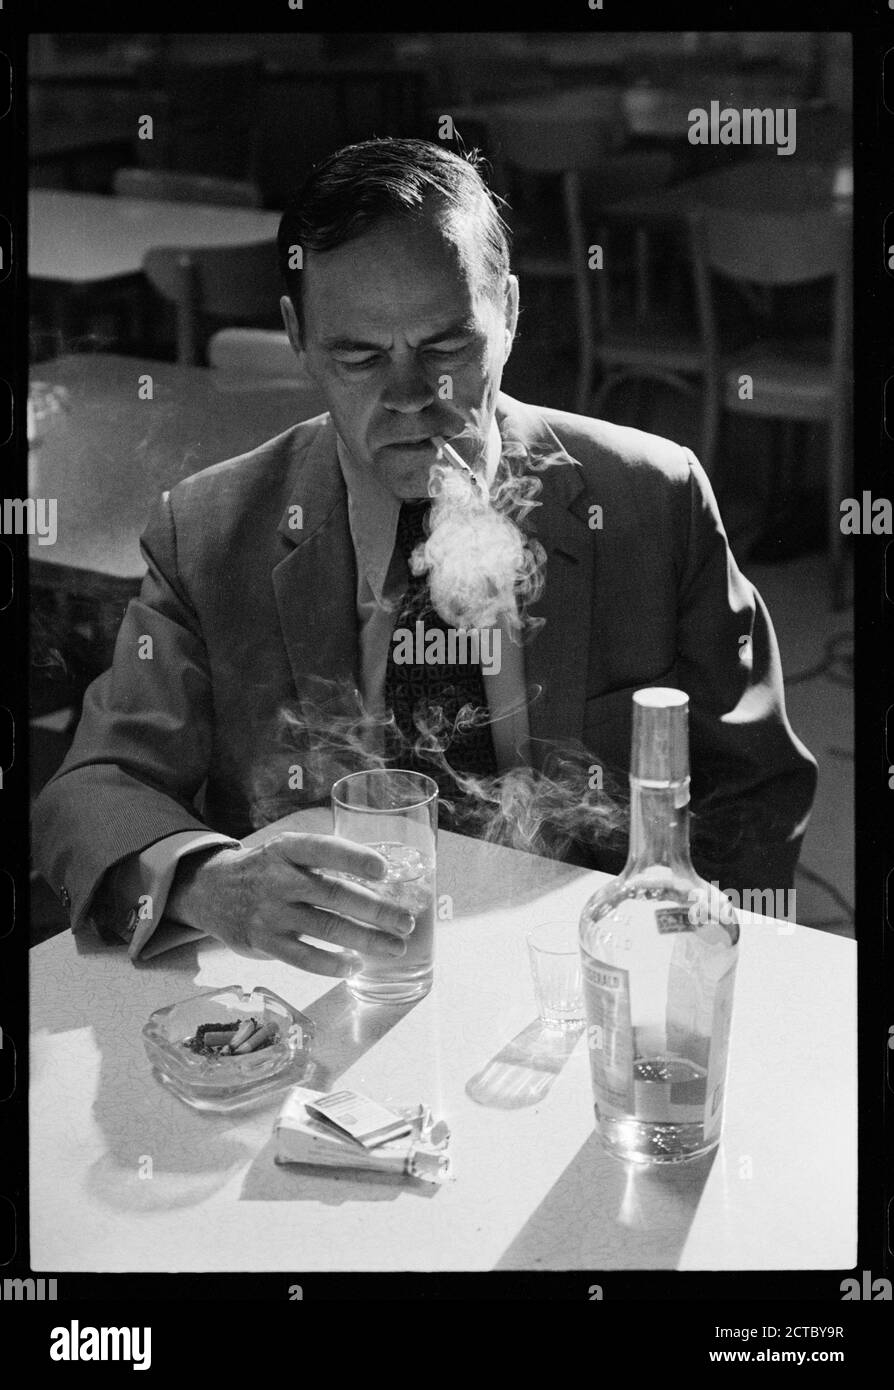 Colpo di un uomo che fuma sigarette e beve alcool che illustra un comportamento rischioso per sviluppare il cancro, Washington, DC, 7/15/1974. (Foto di Warren K Leffler/US News & World Report Magazine Photograph Collection/RBM Vintage Images) Foto Stock